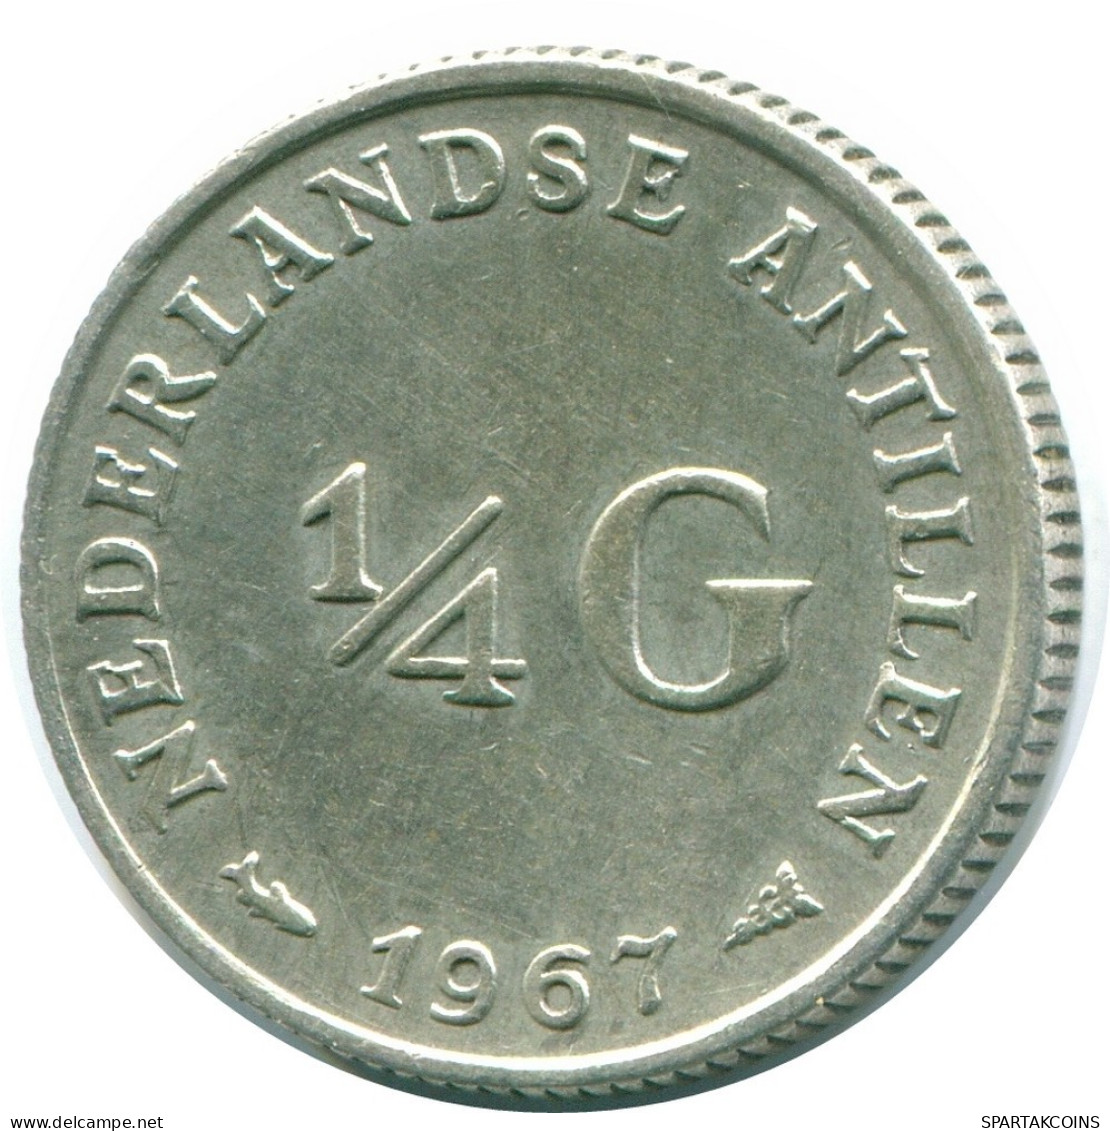 1/4 GULDEN 1967 NIEDERLÄNDISCHE ANTILLEN SILBER Koloniale Münze #NL11463.4.D.A - Niederländische Antillen